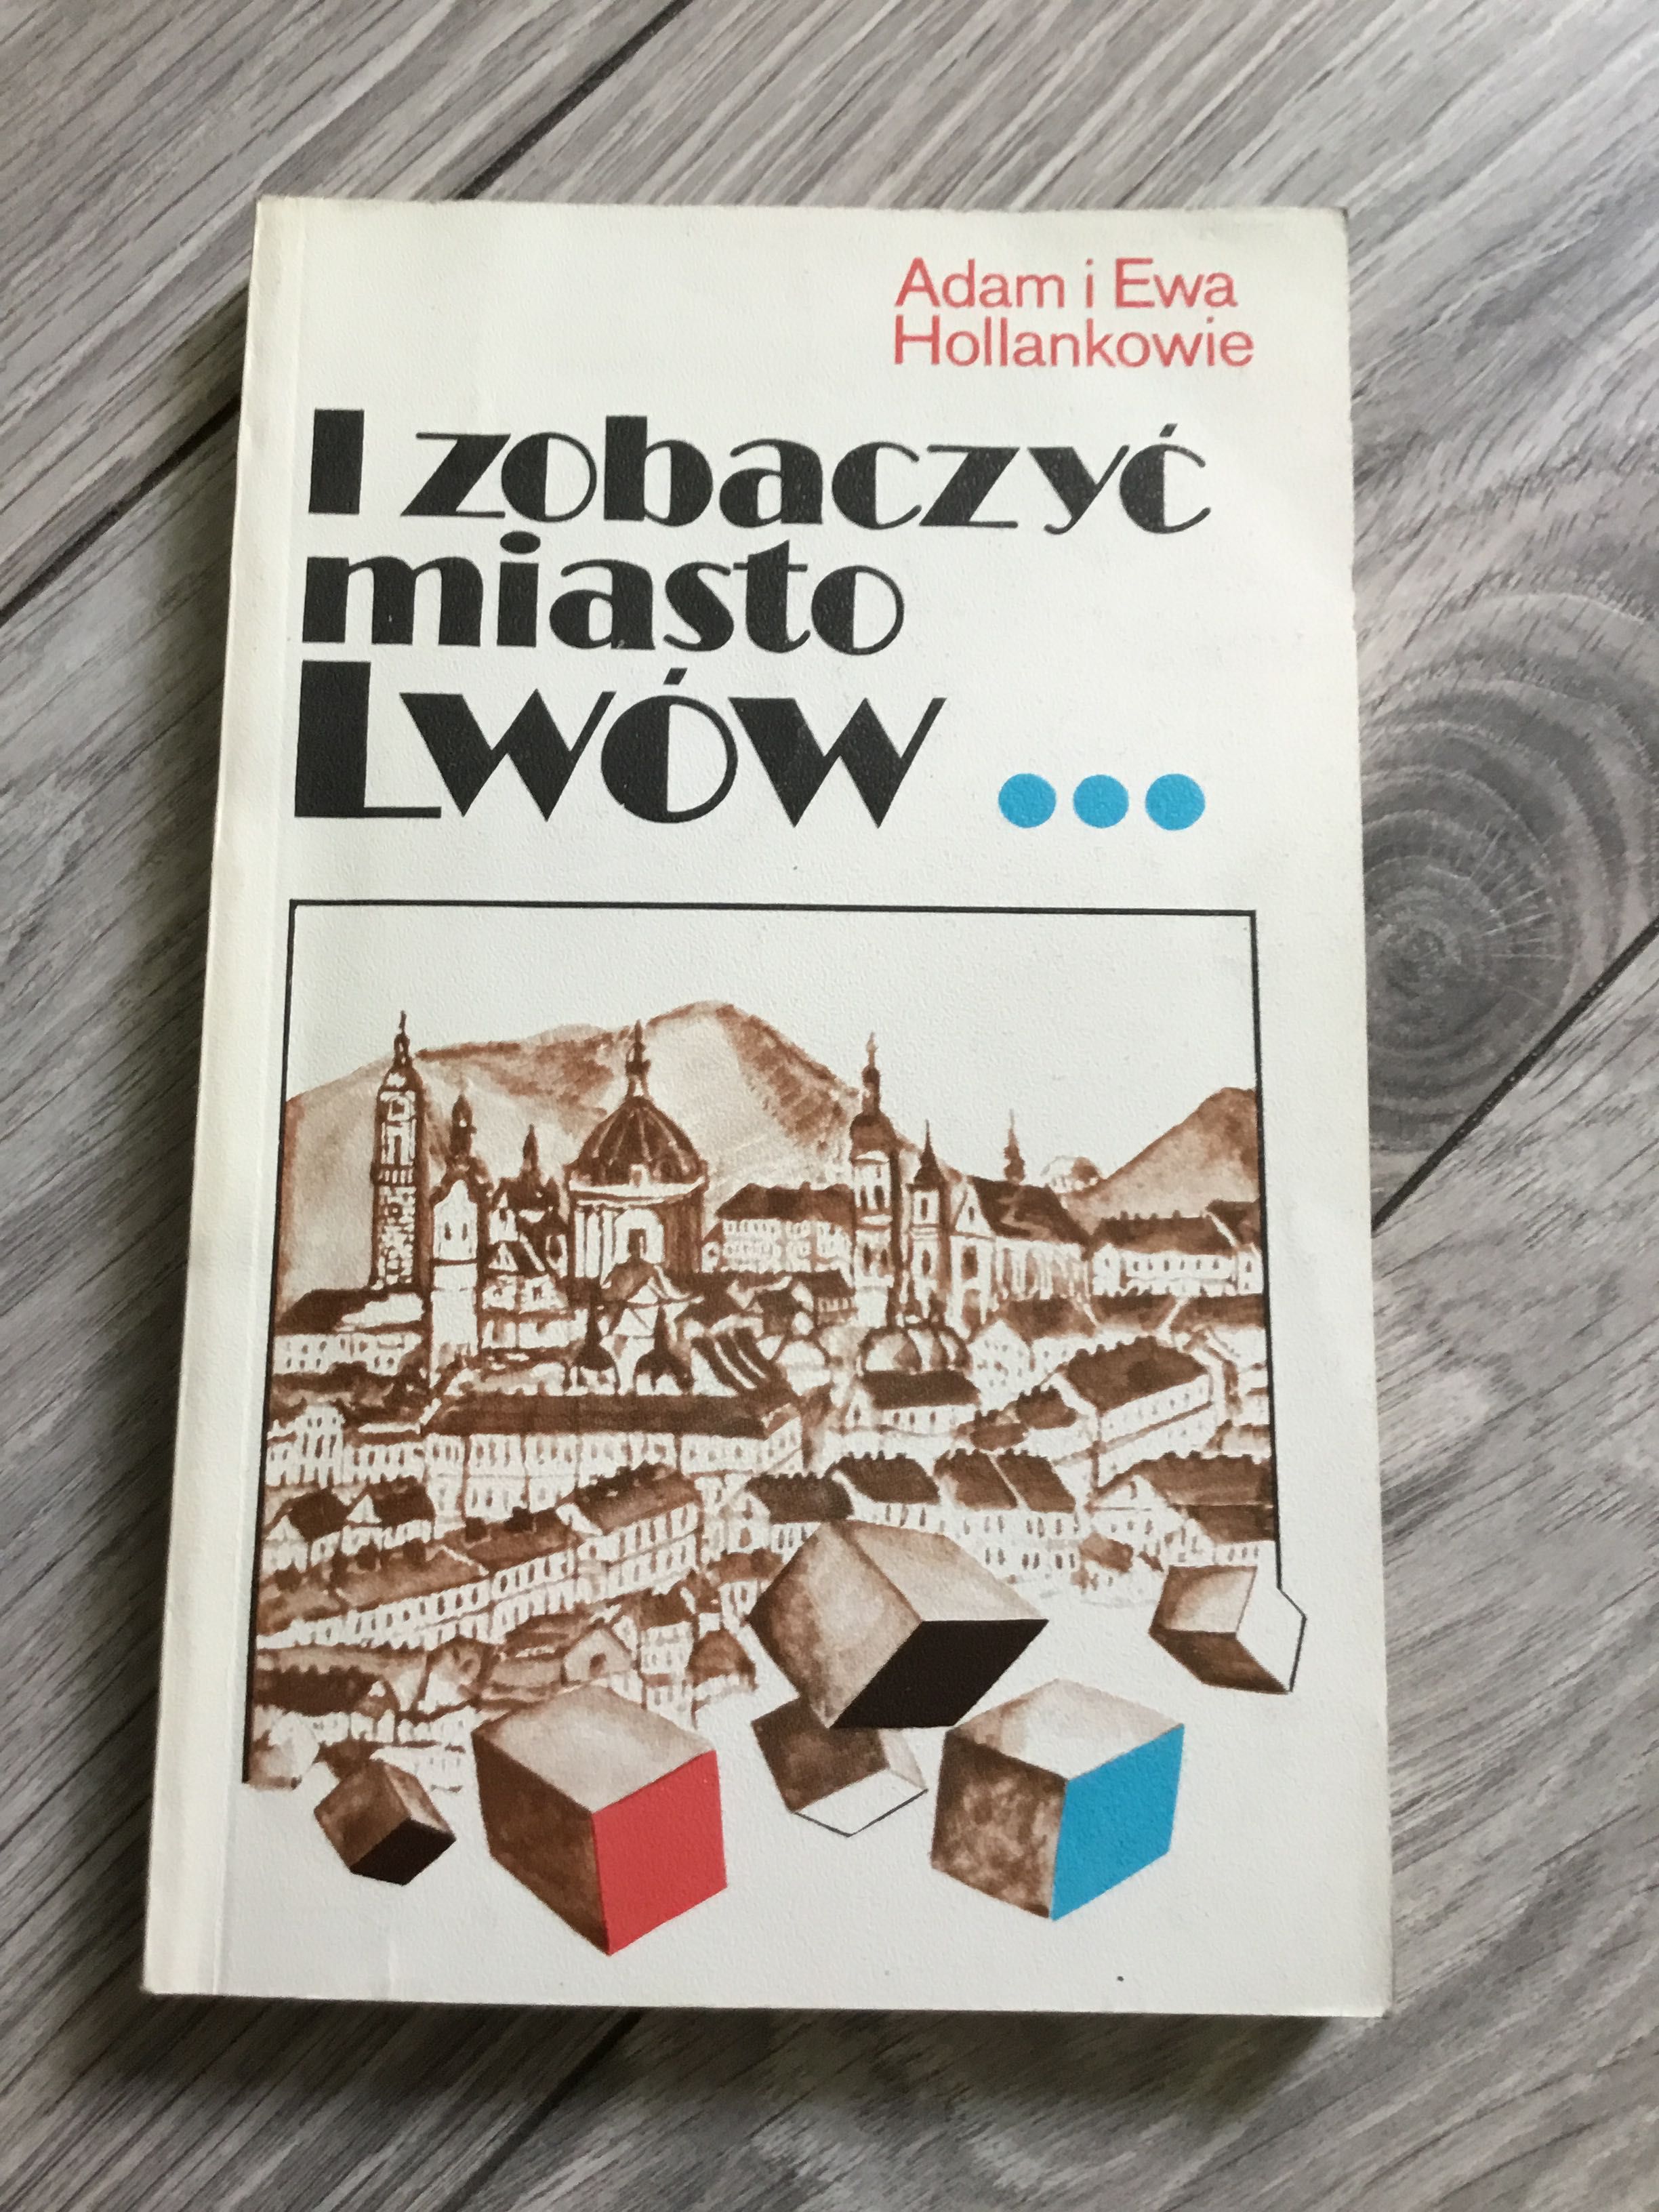 I zobaczyć miasto Lwów